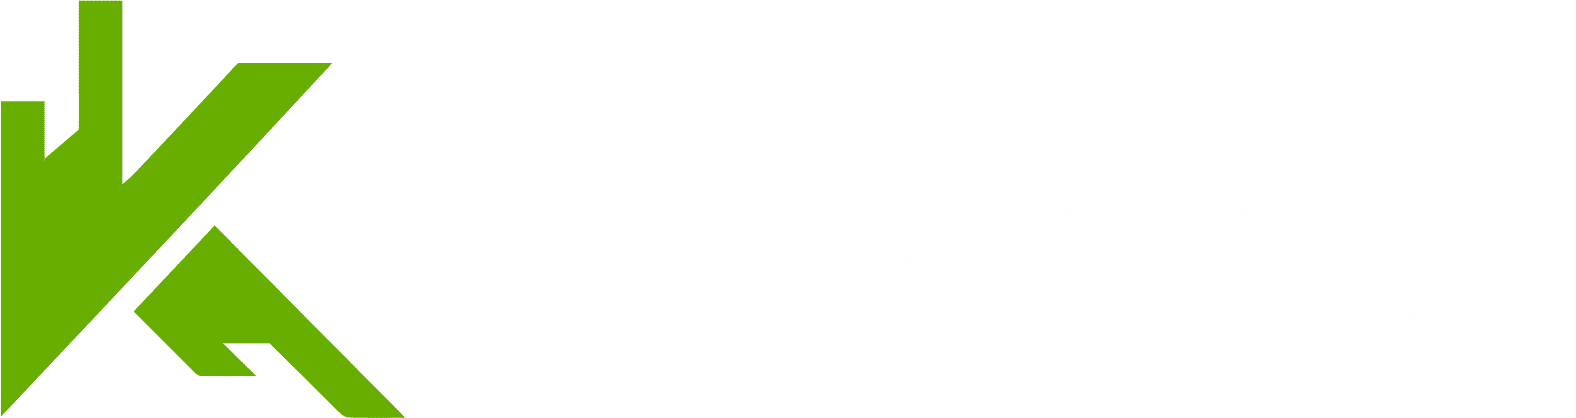 SaaS Kristeron - Logo